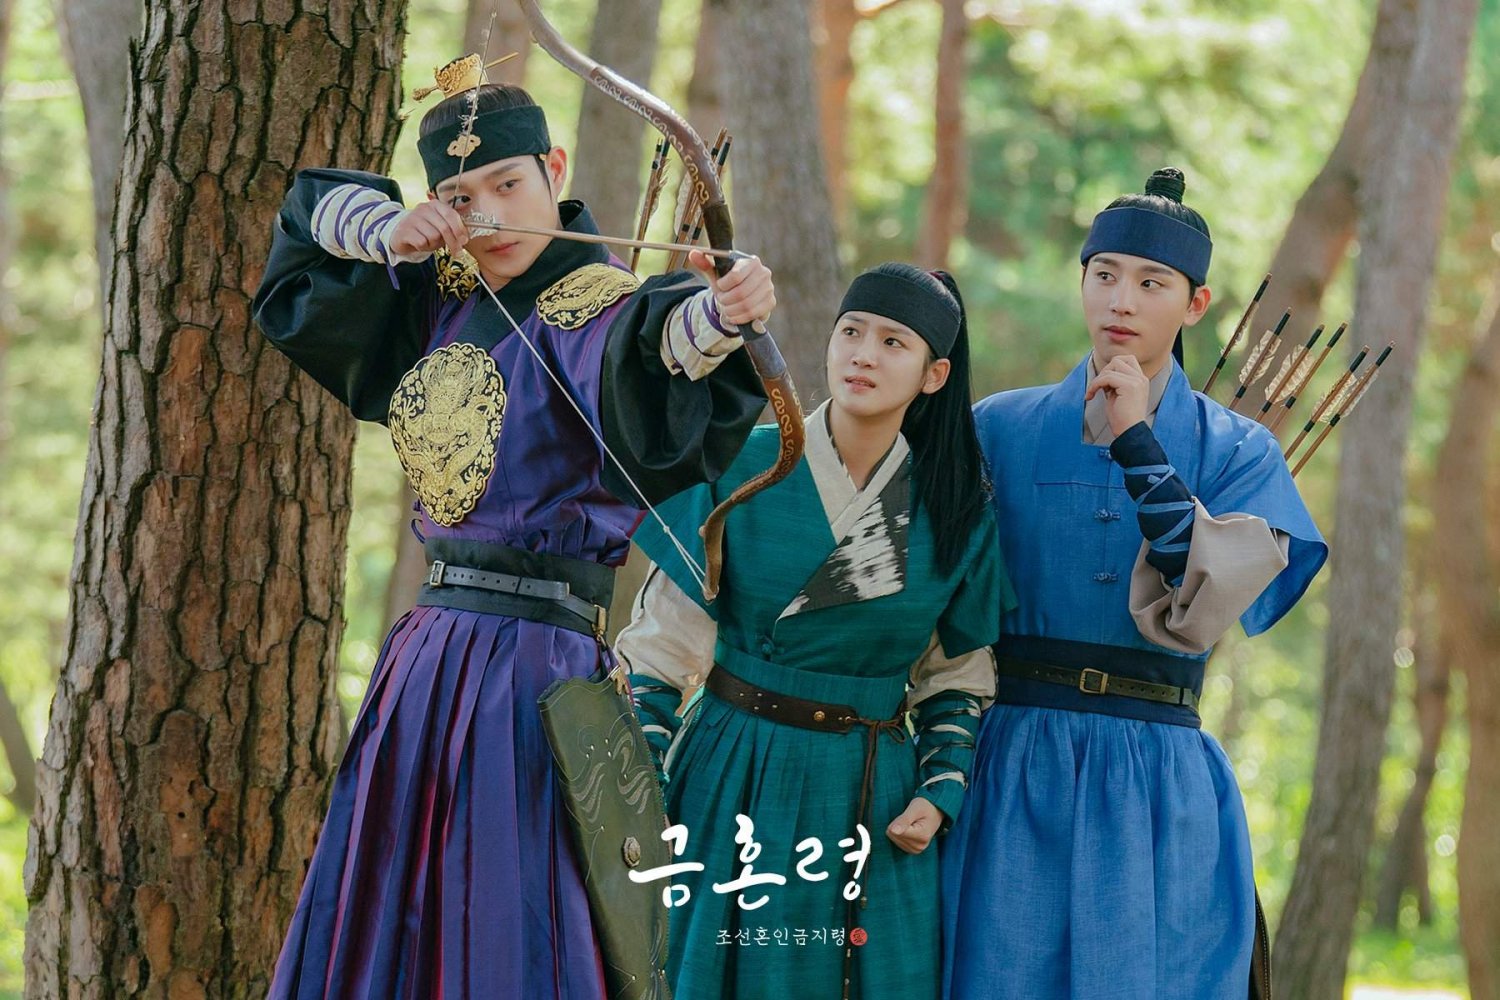 Phim mới của Kim Young Dae đóng: Lệch cấm hôn - The Forbidden Marriage (2022)